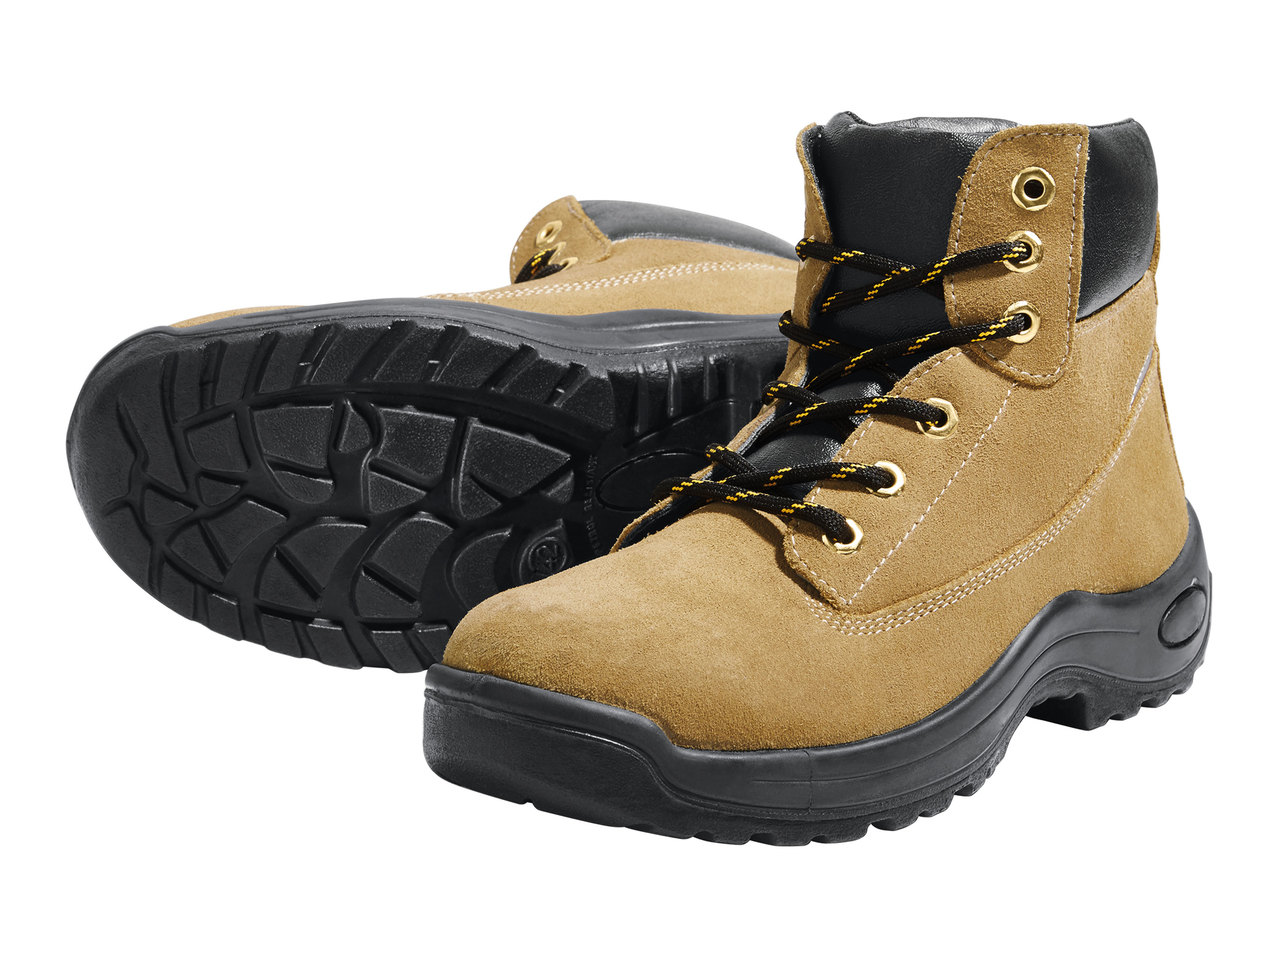 Powerfix Profi Men's S3 Leather Safety Boots1